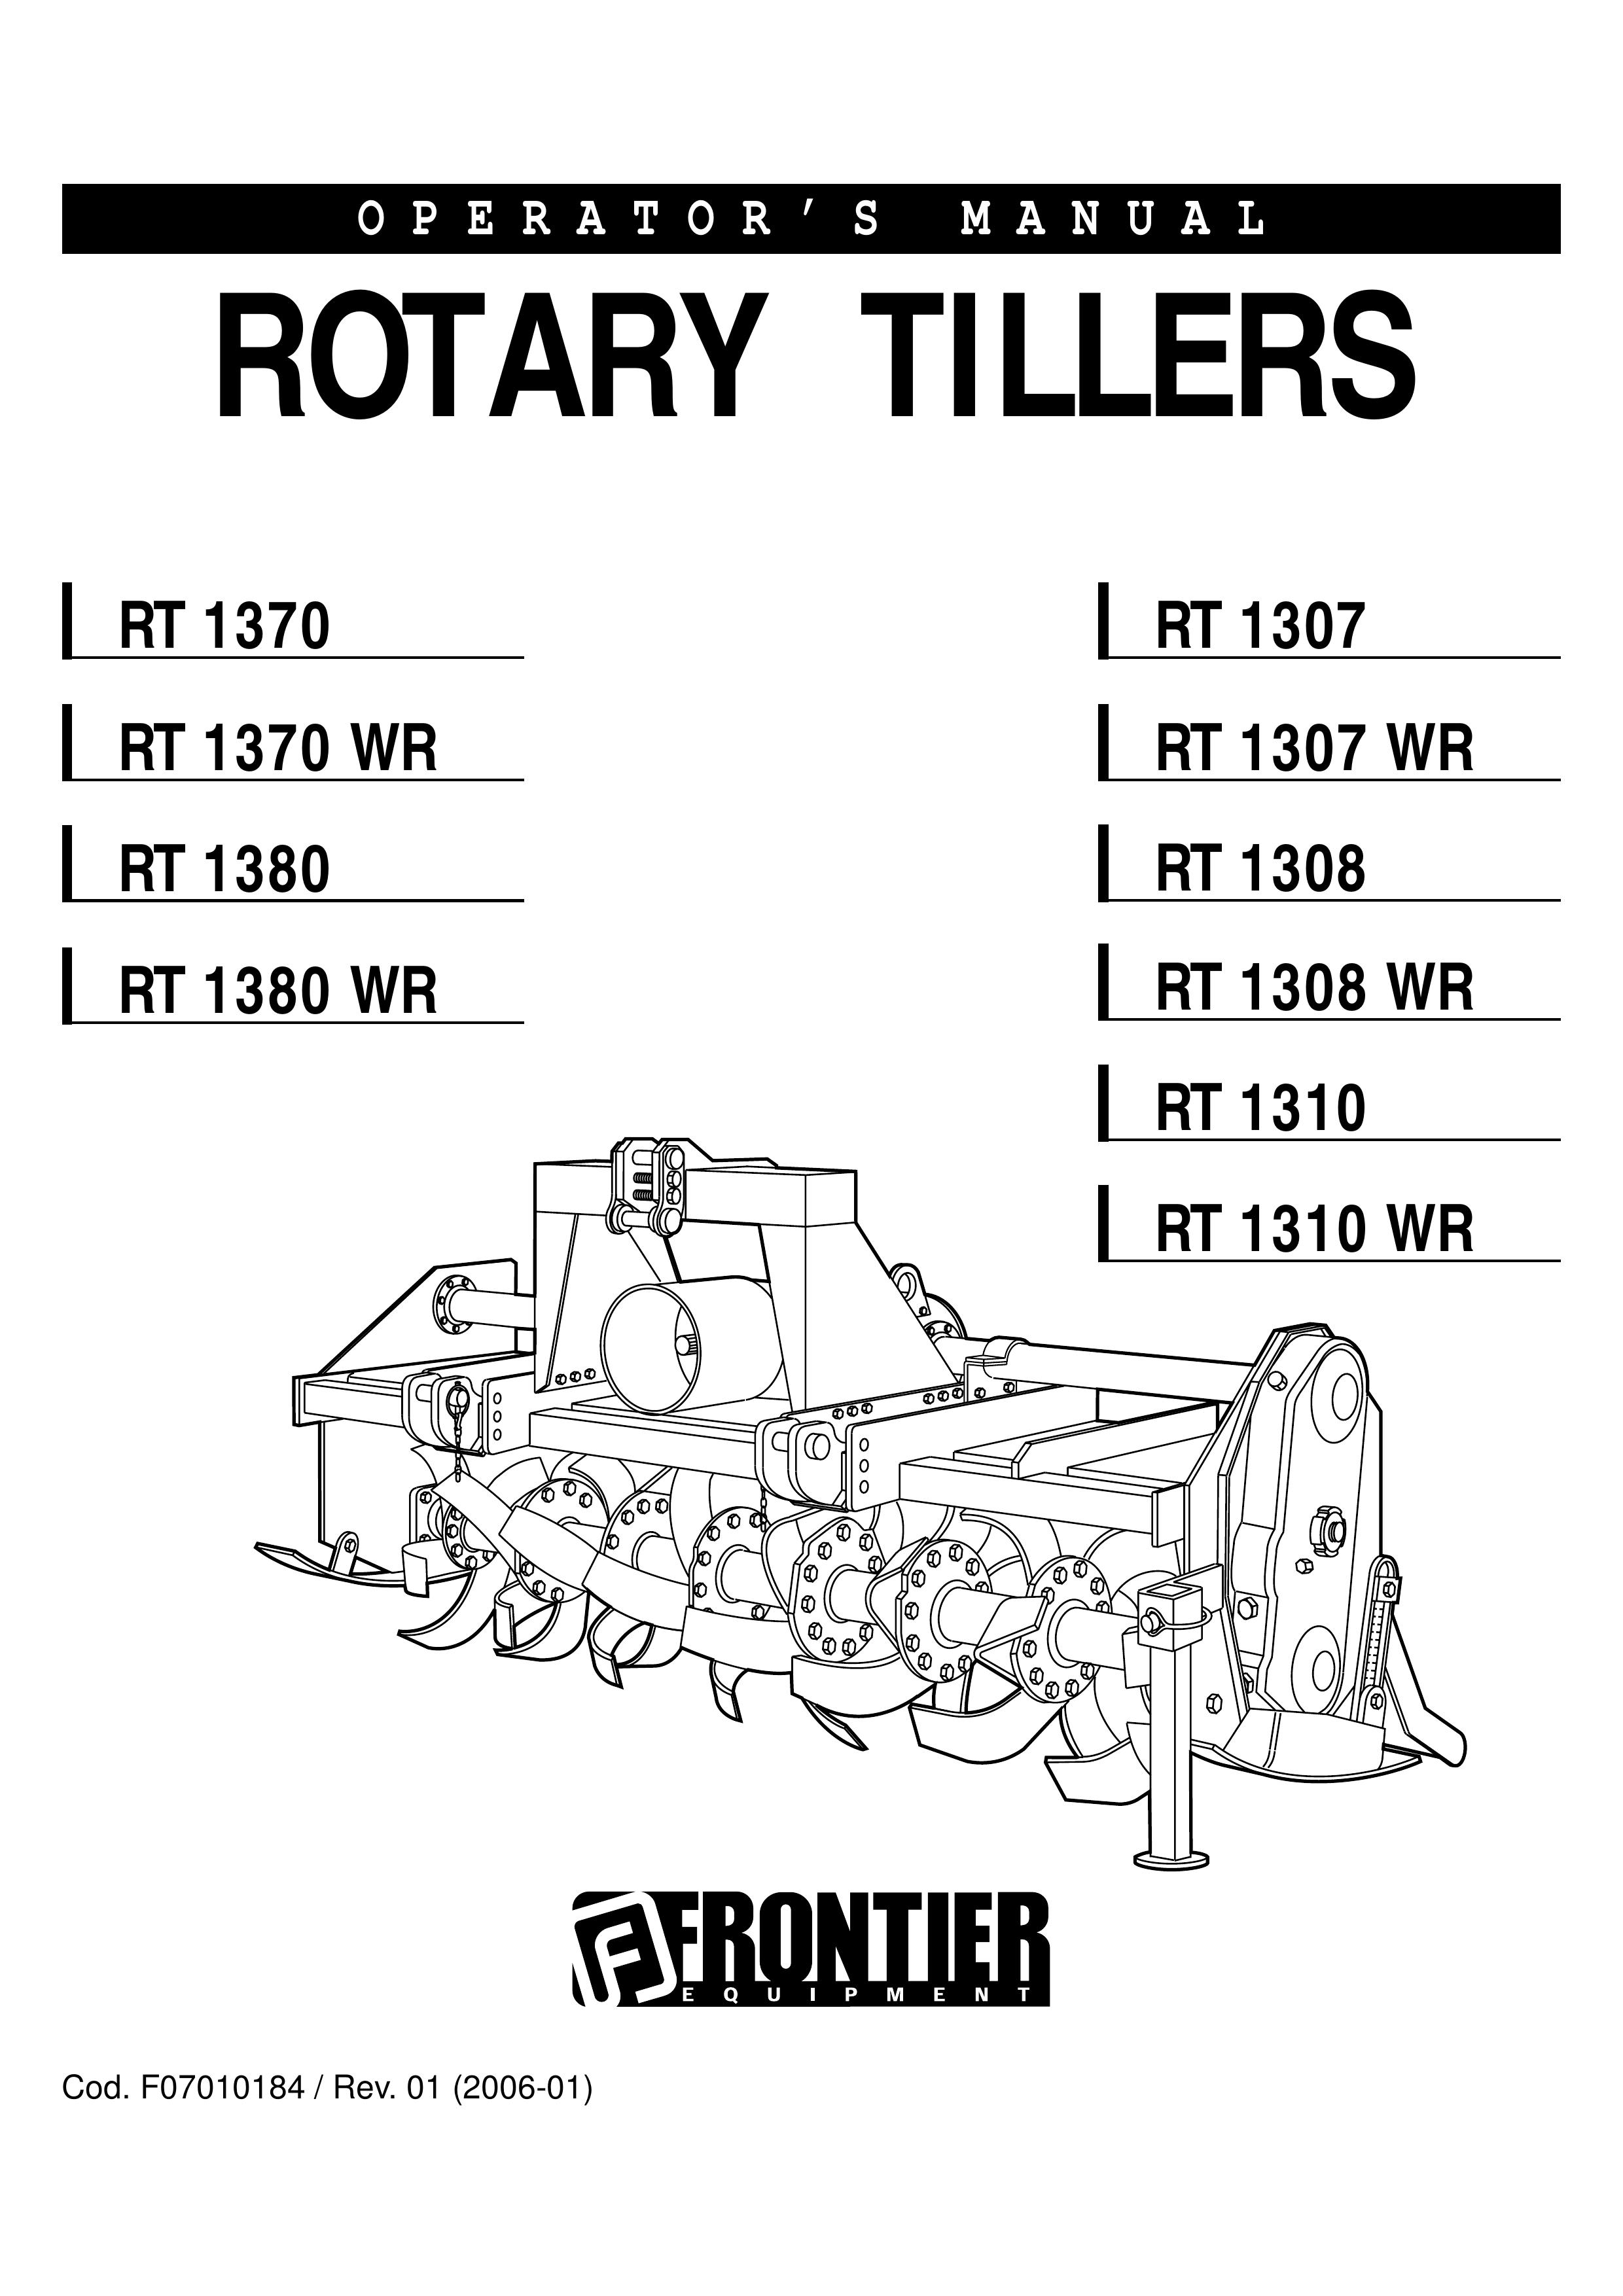 John Deere RT 1307 Tiller User Manual